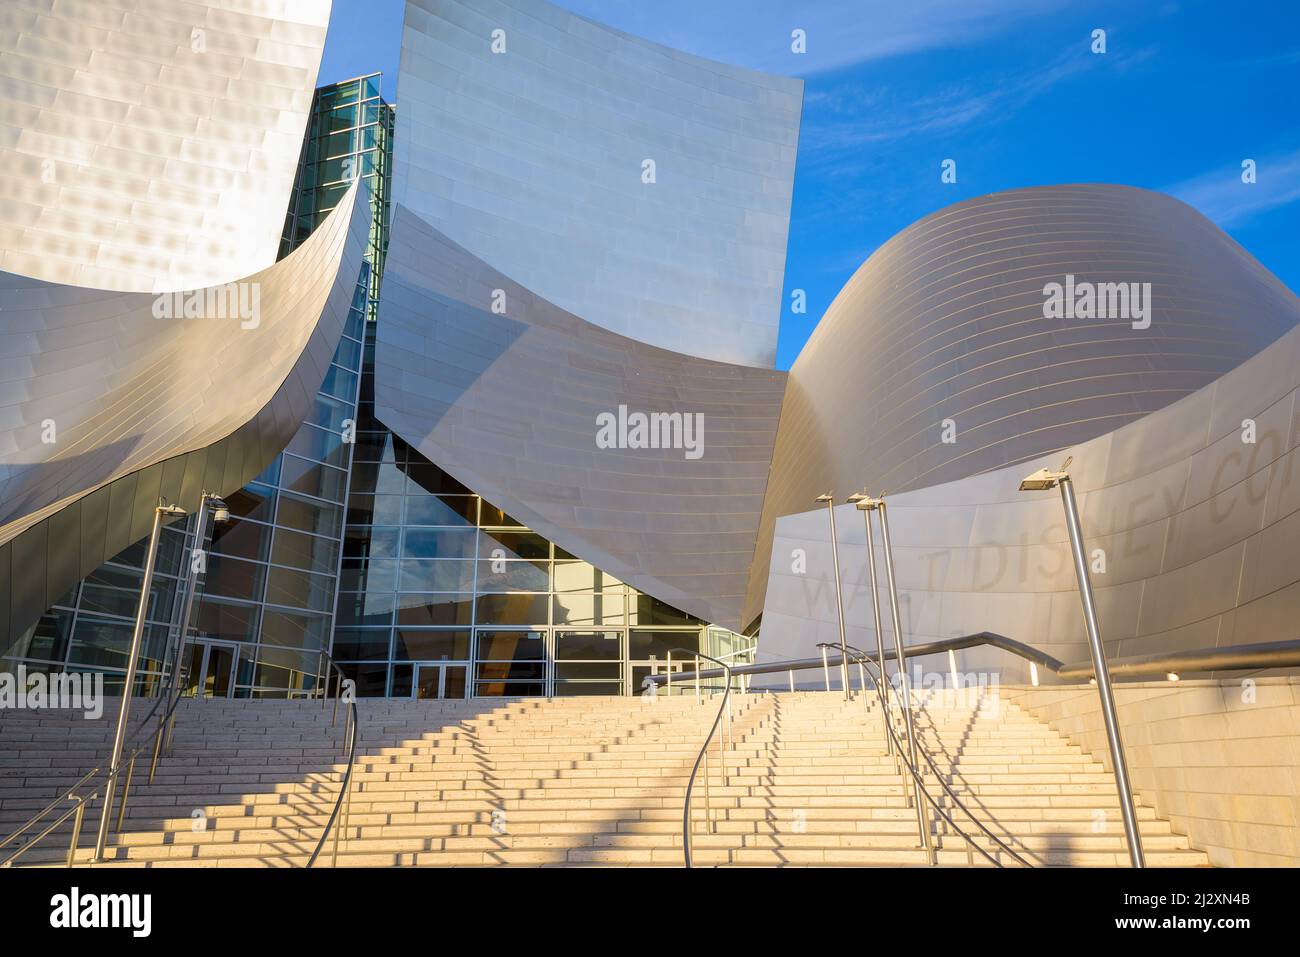 LOS ANGELES, CALIFORNIA - 7 novembre 2013: Walt Disney Concert Hall a LOS ANGELES. L'edificio è stato progettato da Frank Gehry e aperto nel 2003. Foto Stock